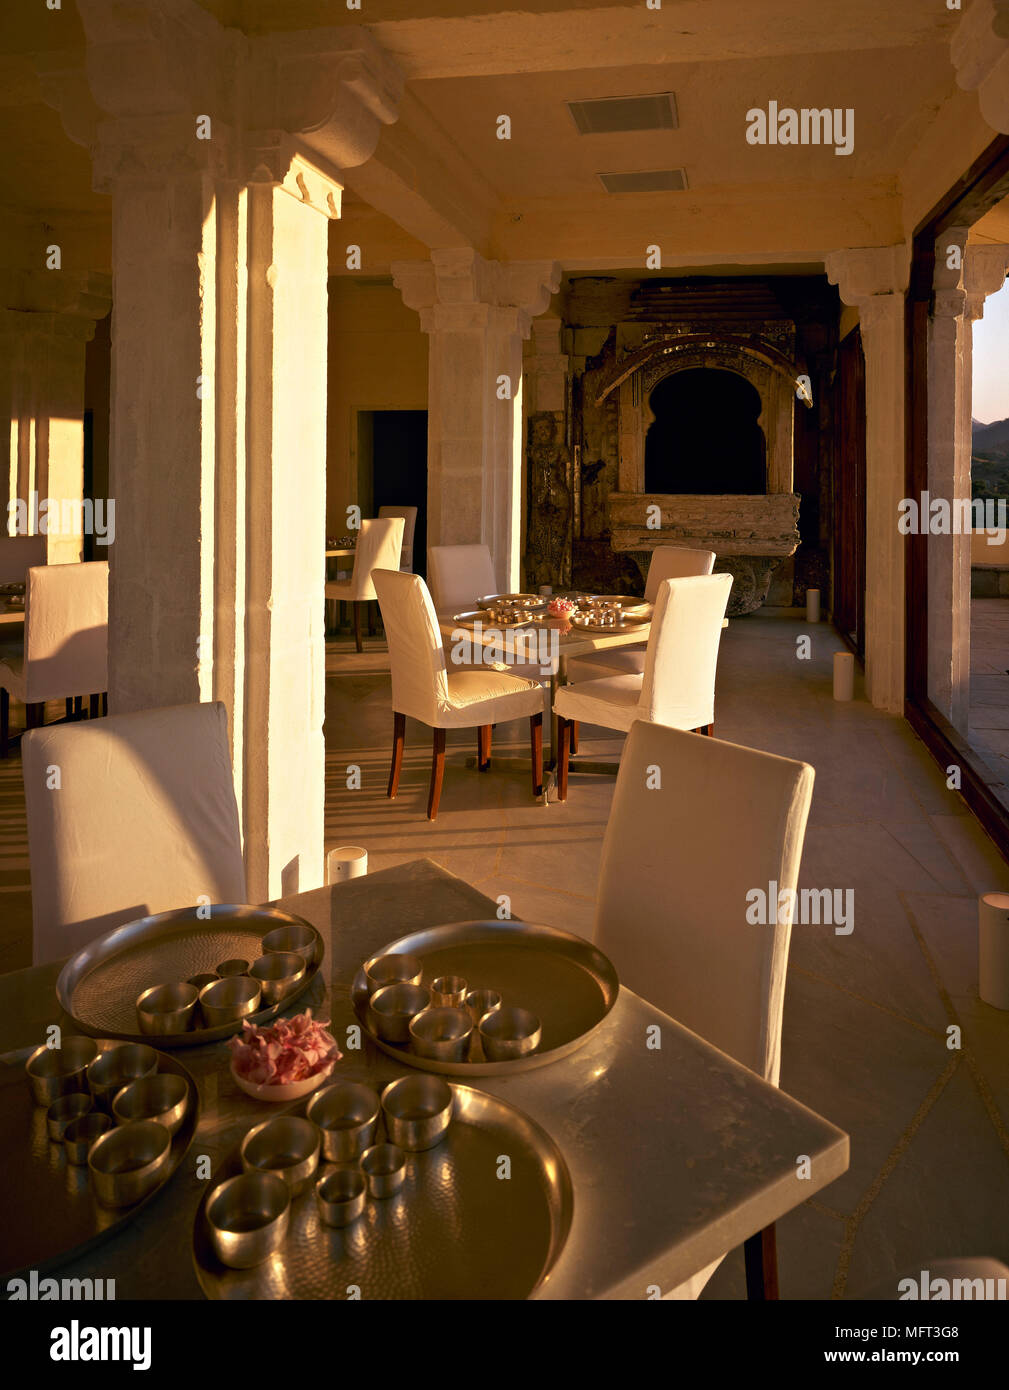 La sala da pranzo dell'hotel colonne in pietra tavoli sedie imbottite interni alberghi sale comuni i dettagli architettonici Foto Stock